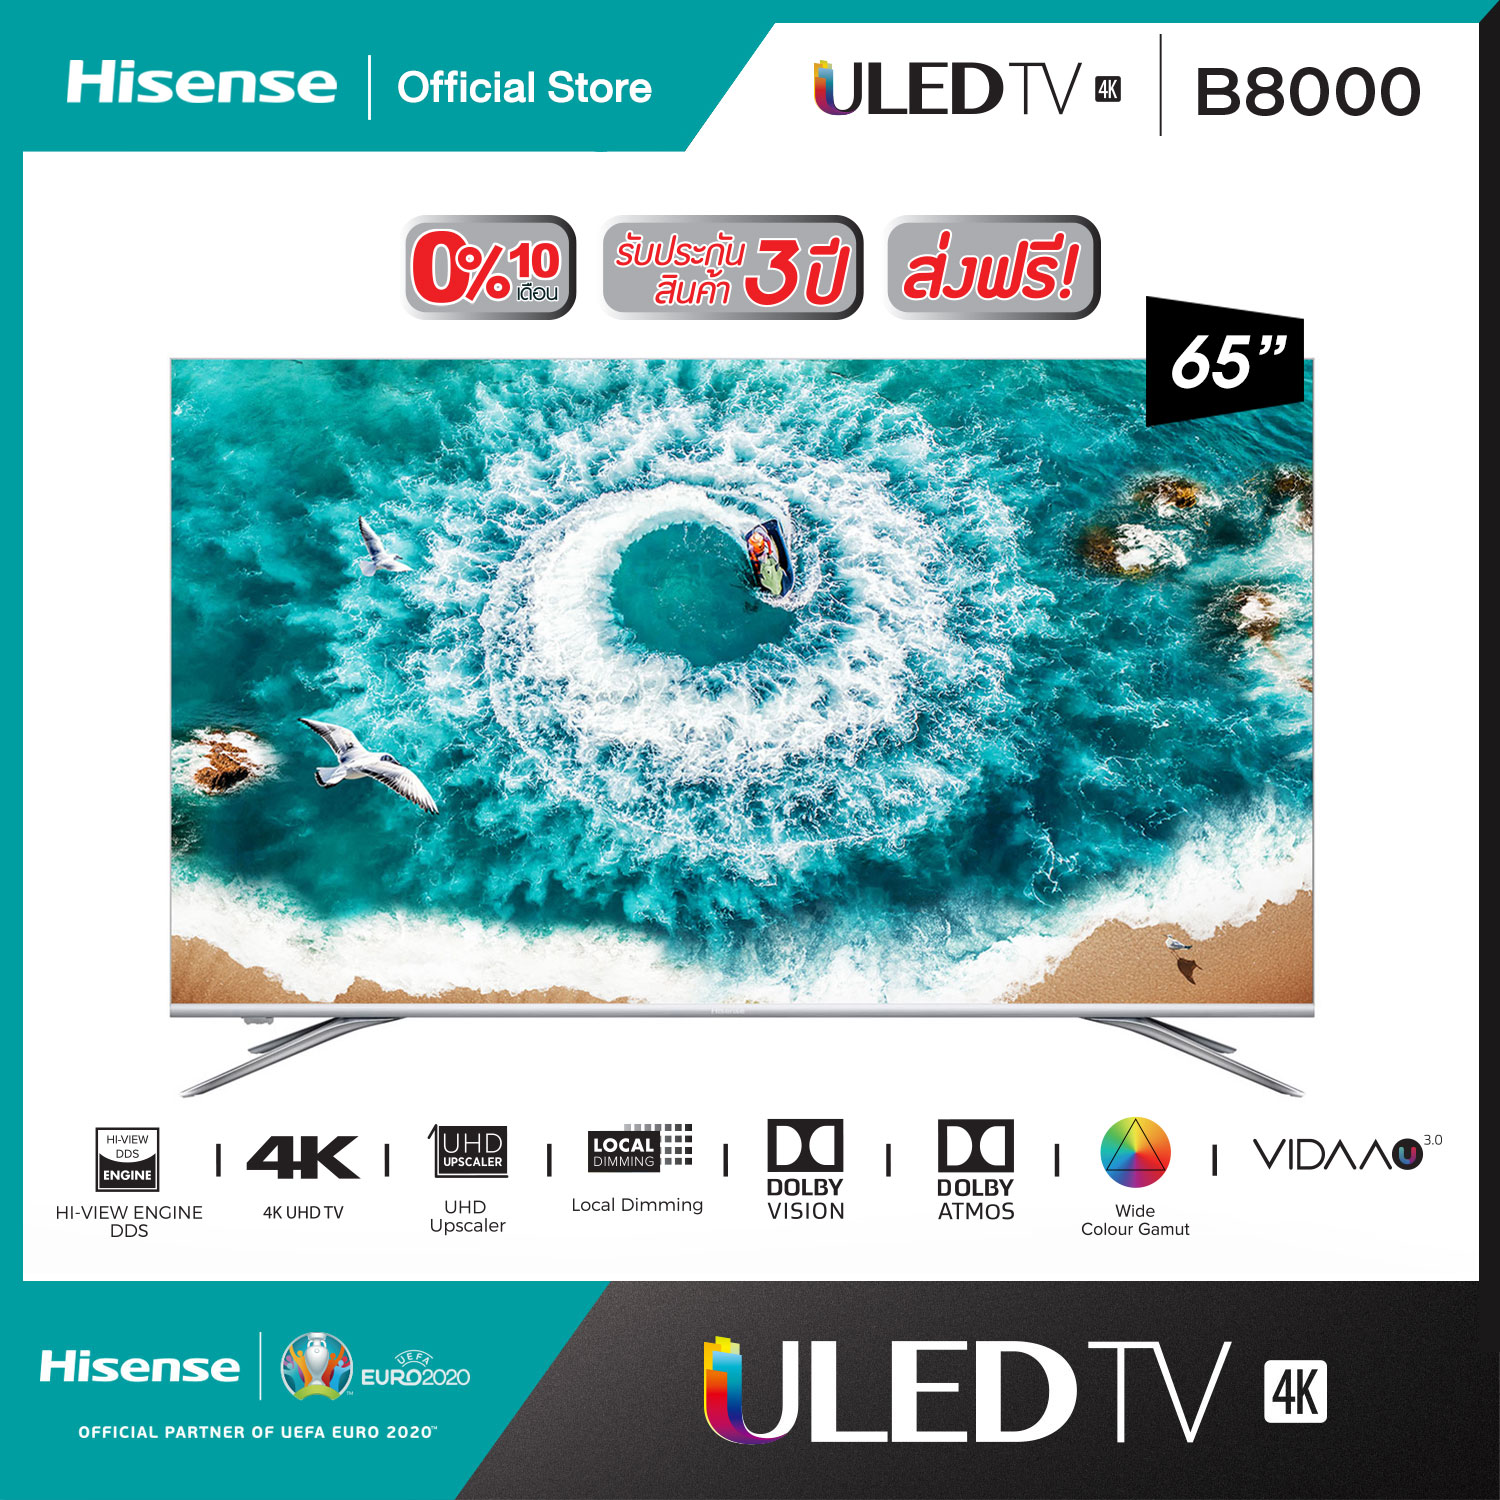 ทีวี Hisense  ULED TV ขนาด 65 นิ้ว รุ่น 65B8000 โมเดล 2019 [ผ่อน 0% นาน 10 เดือน]